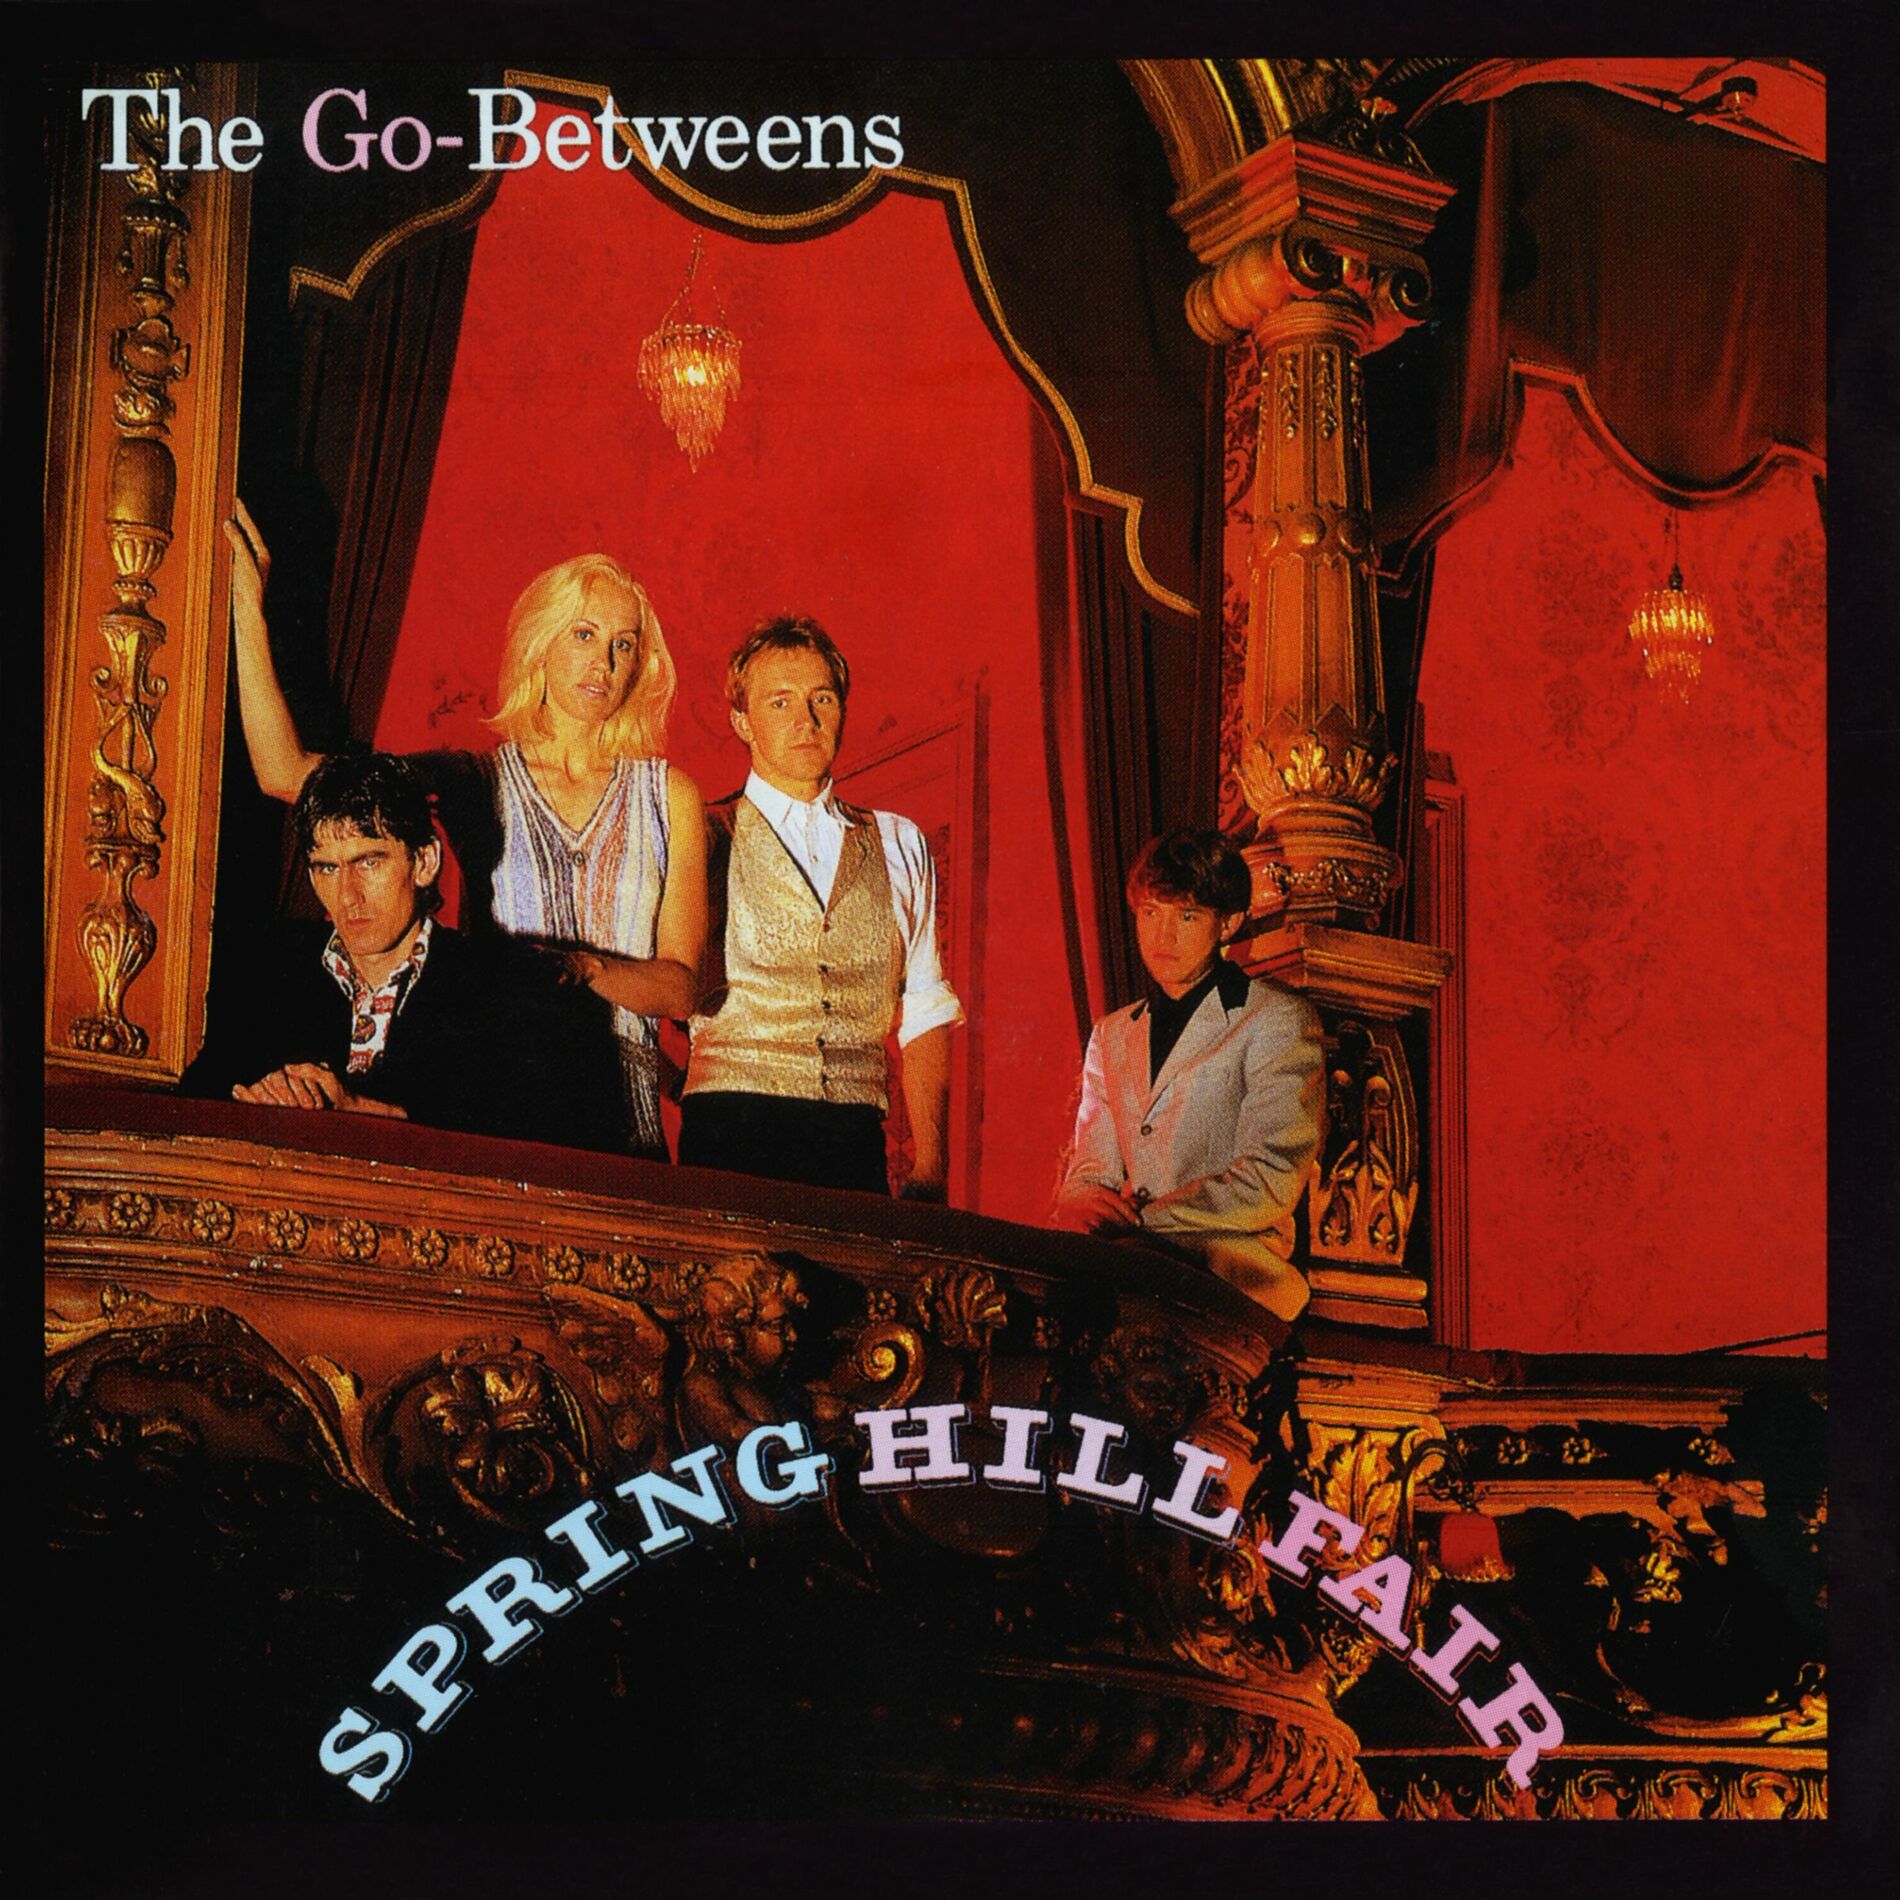 The Go-Betweens: albums, songs, playlists | Listen on Deezer